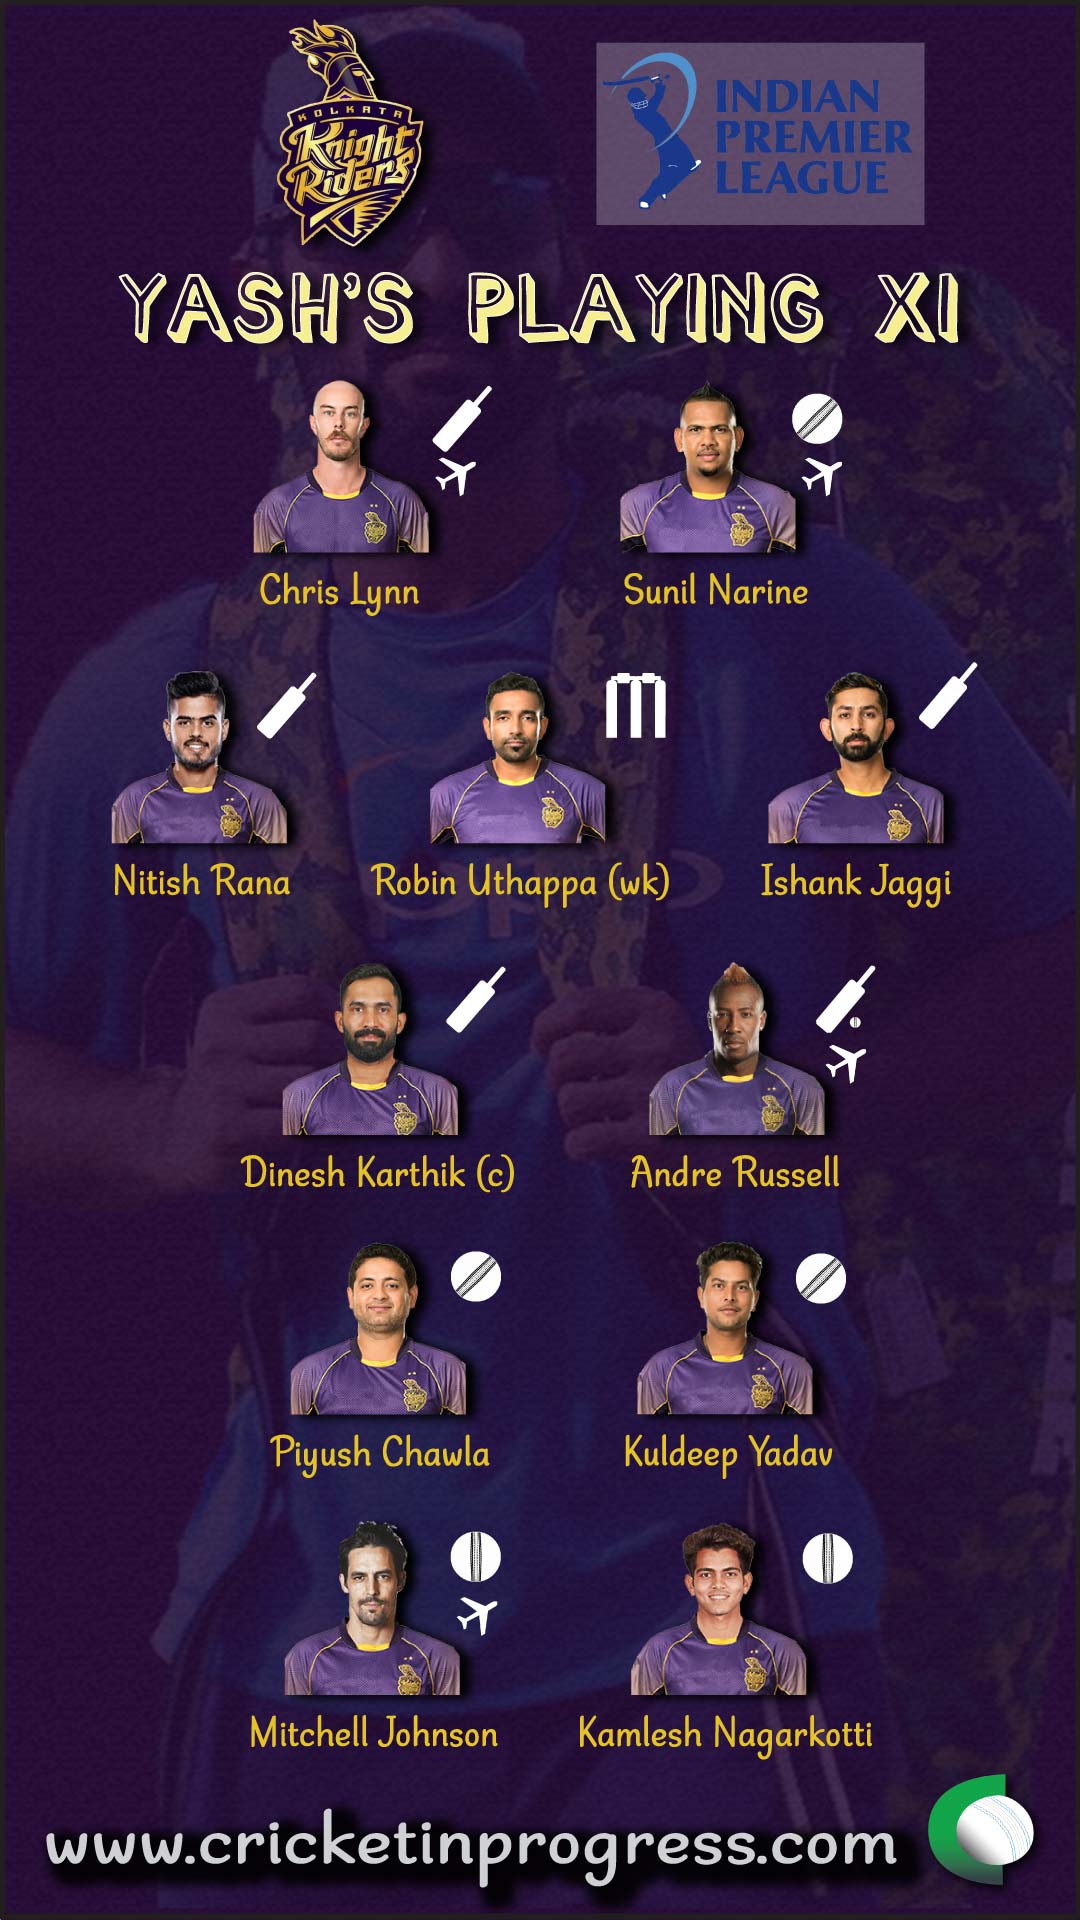 KKR Yash Playing XI 2018